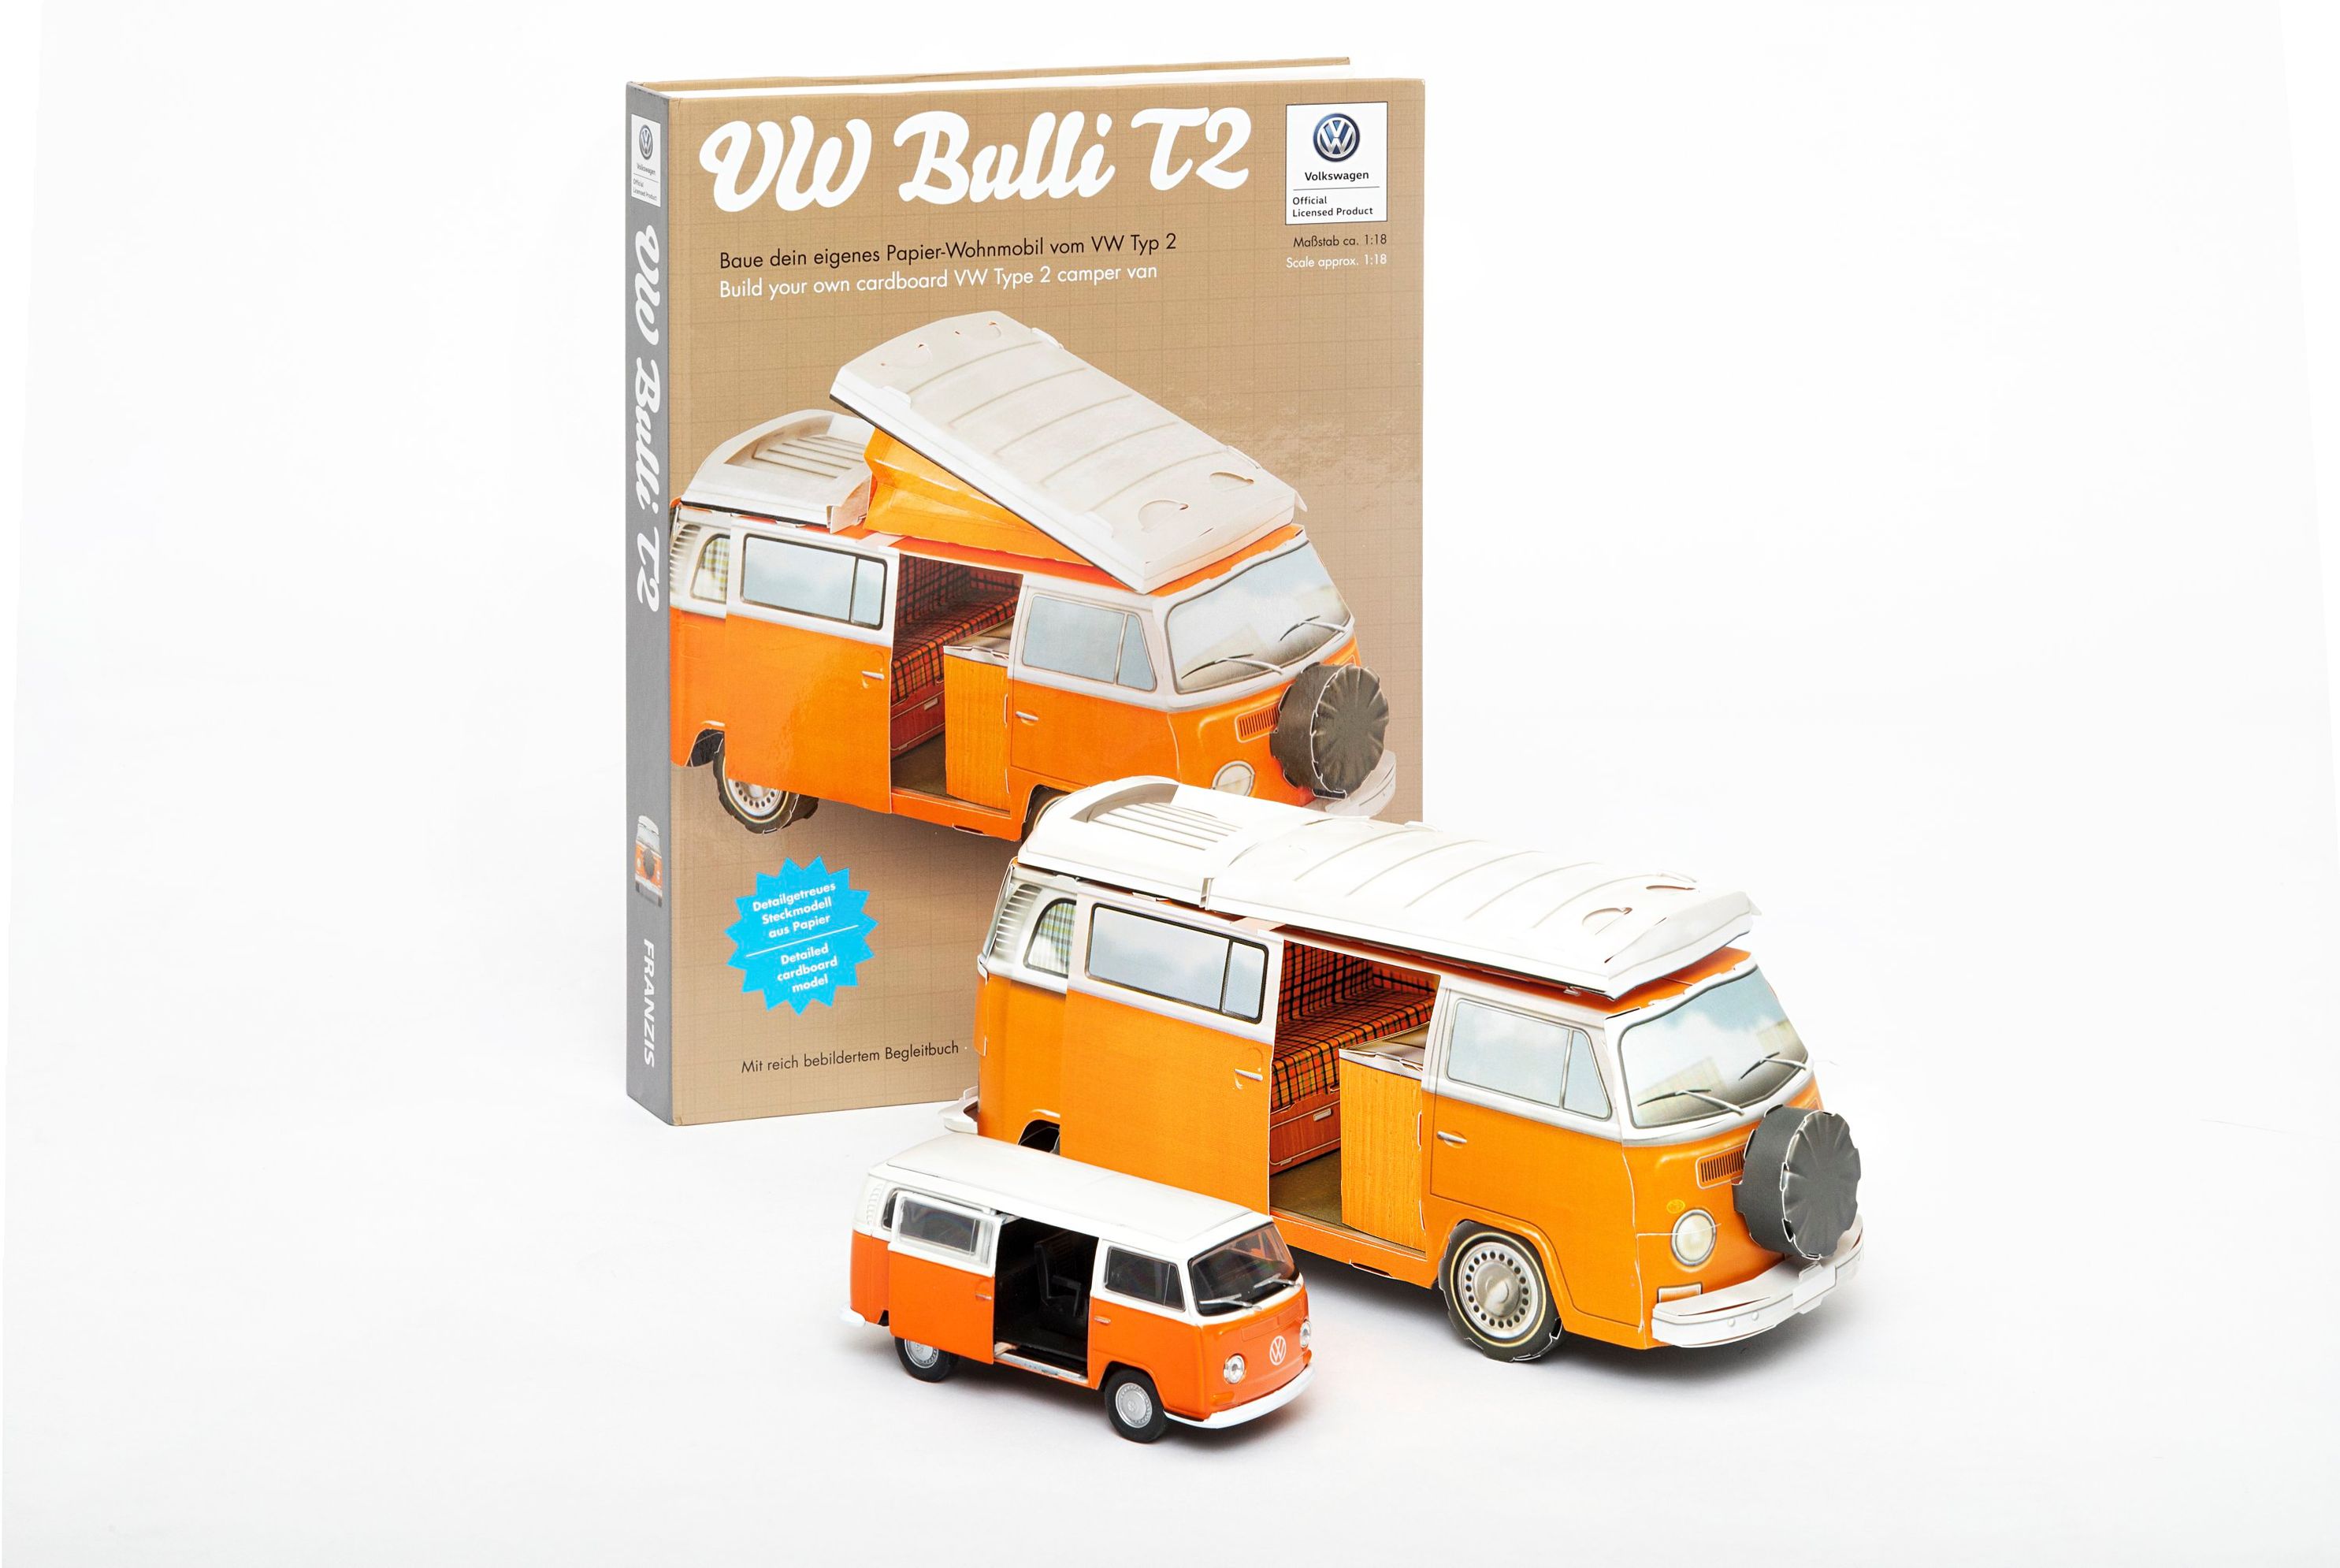 VW Bulli T2, mit Modellauto jetzt bei Weltbild.de bestellen